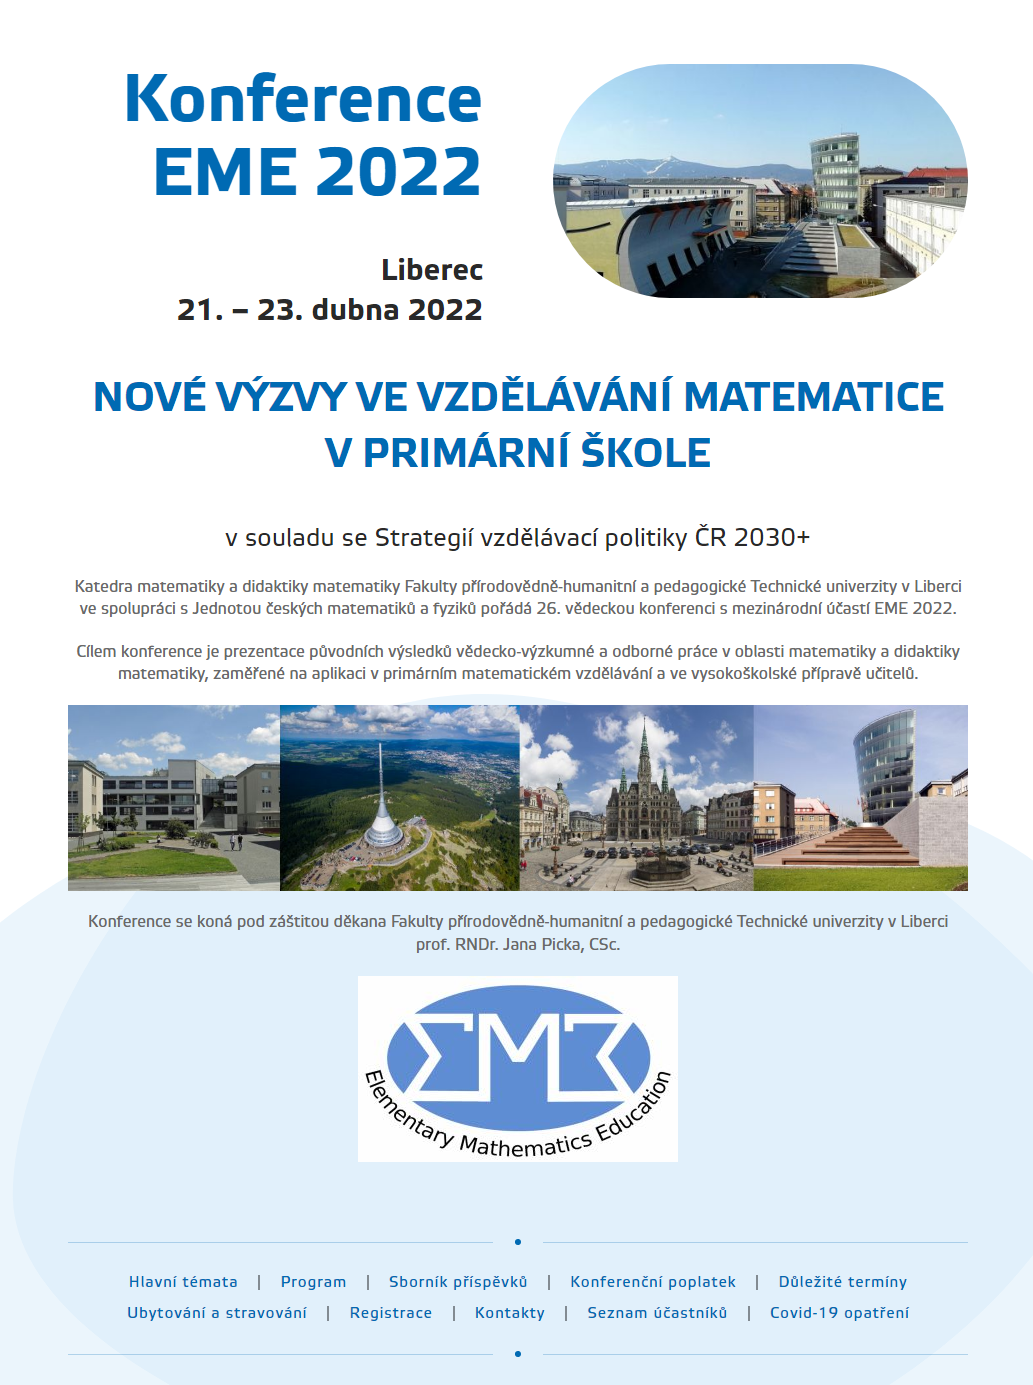 EME 2022